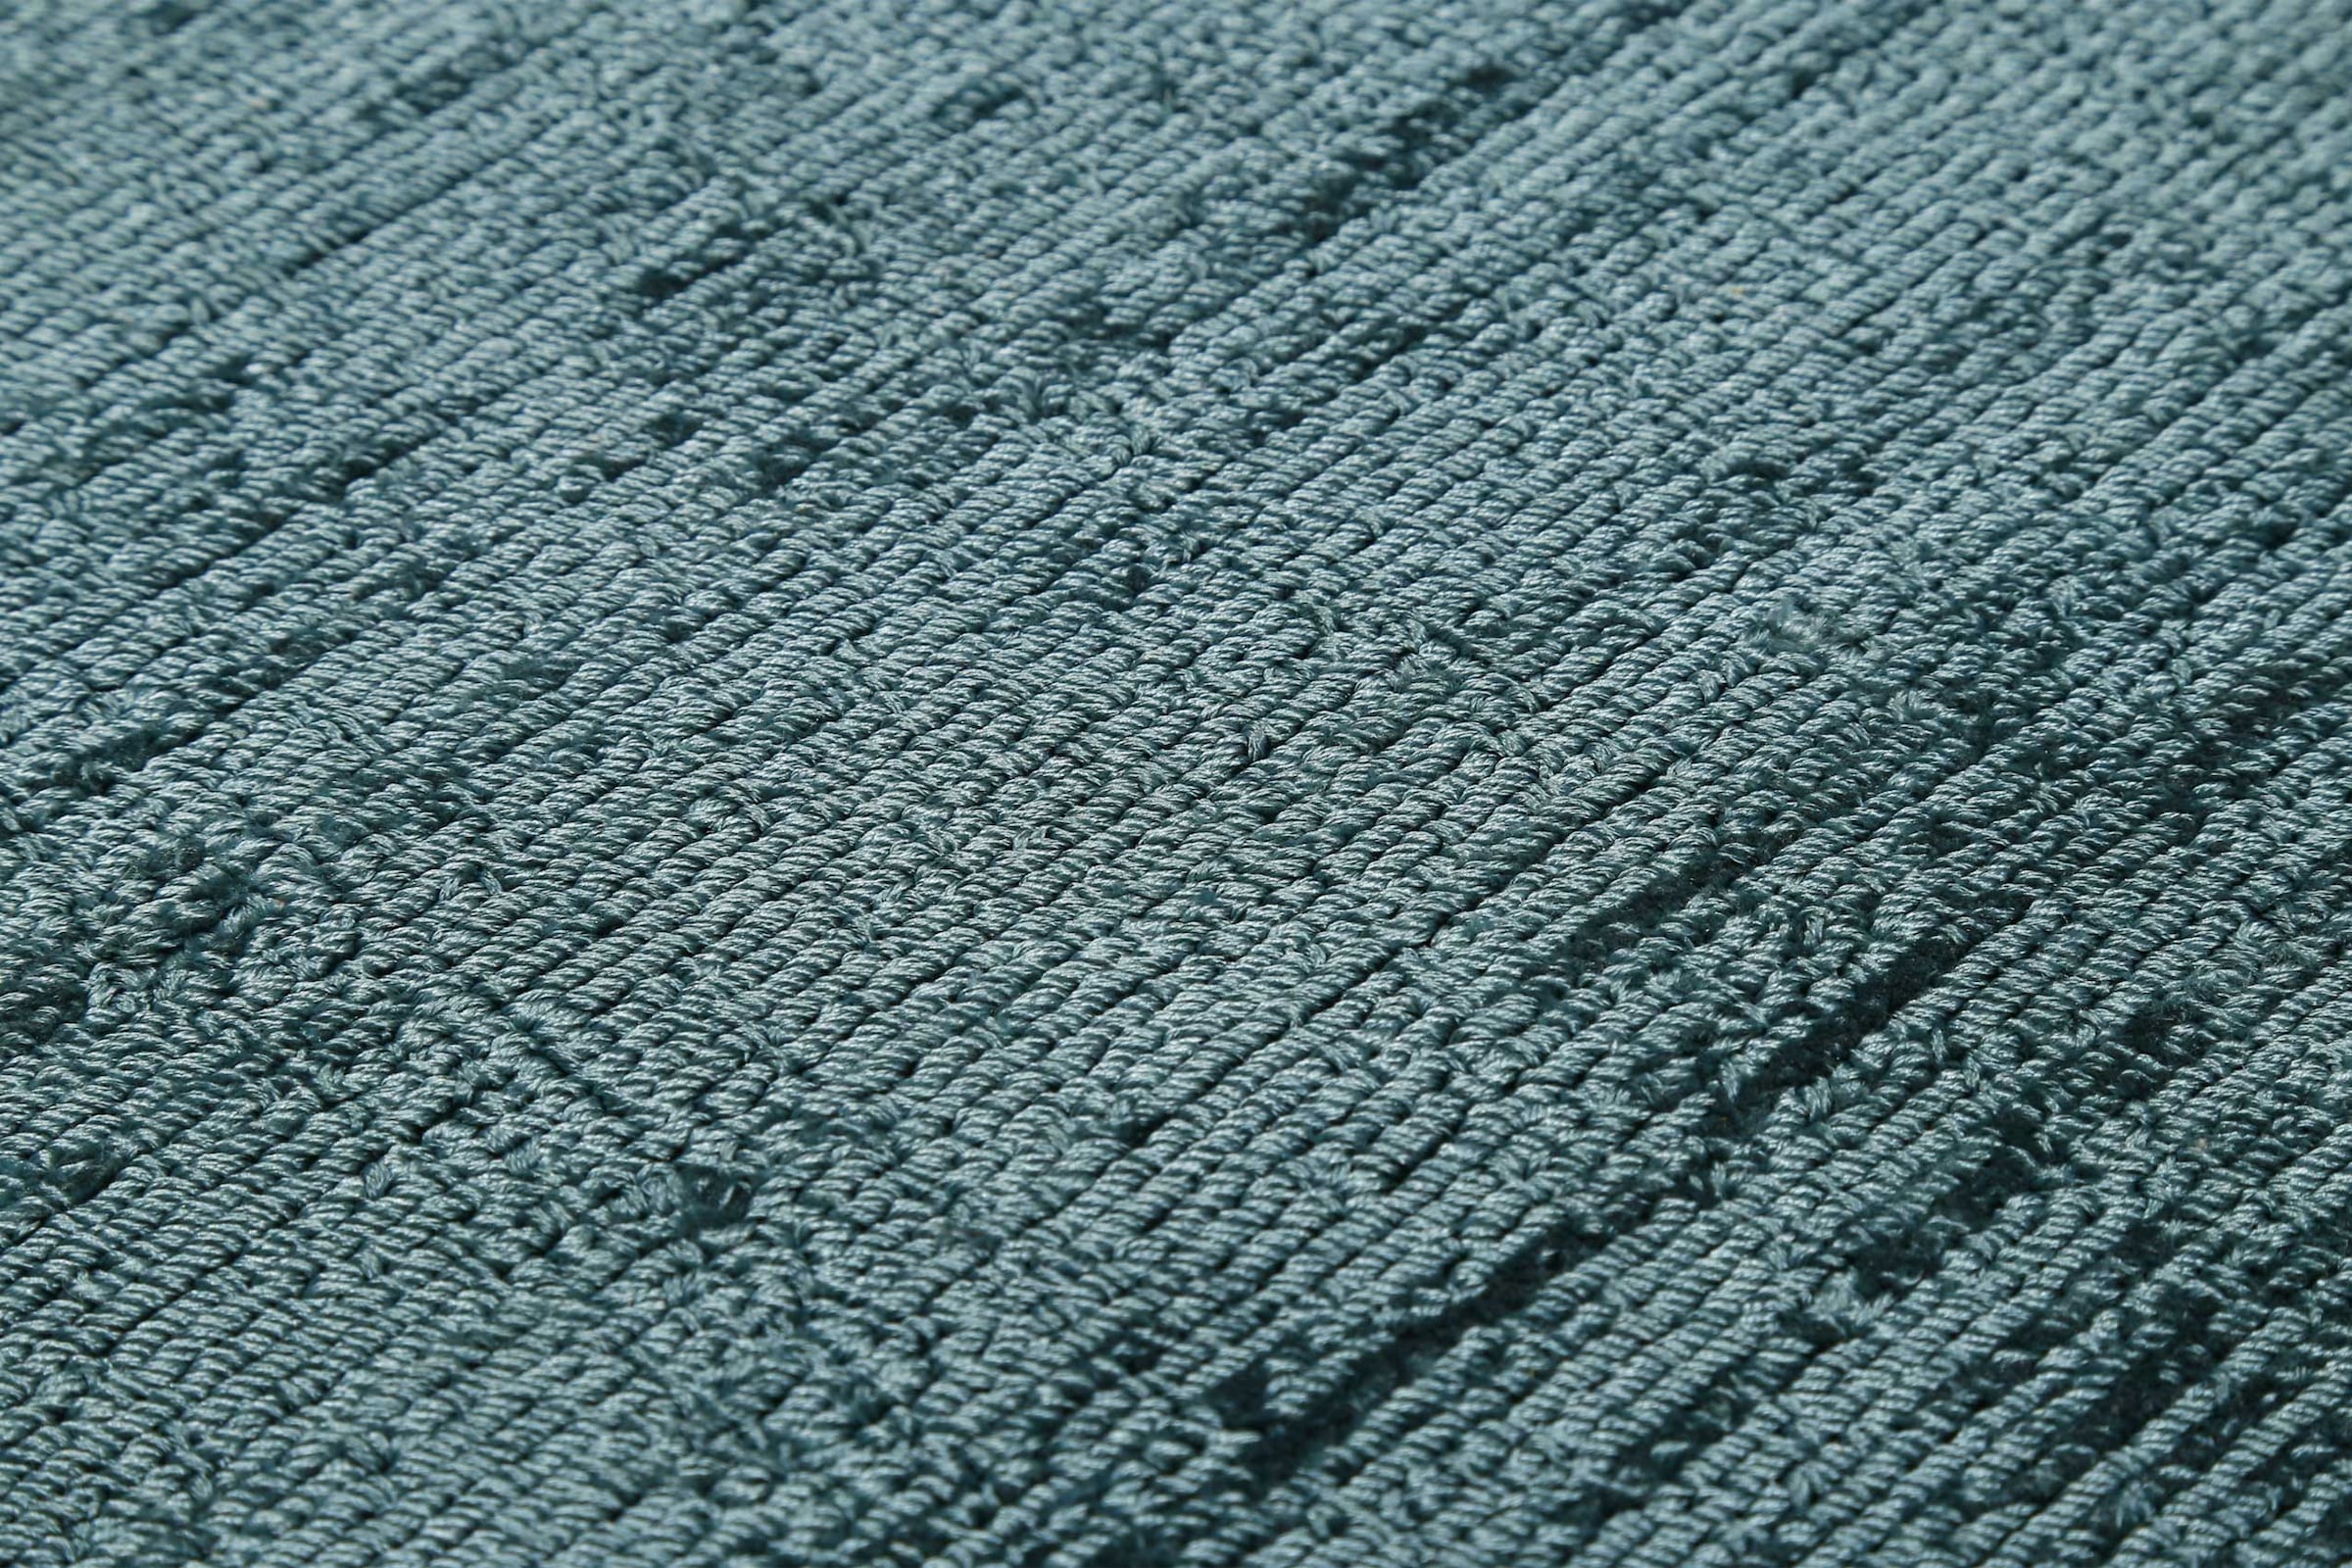 Esprit Teppich »Gil«, rund, handgewebt, seidig glänzend, schimmernde Farbbrillianz, Melangeeffekt